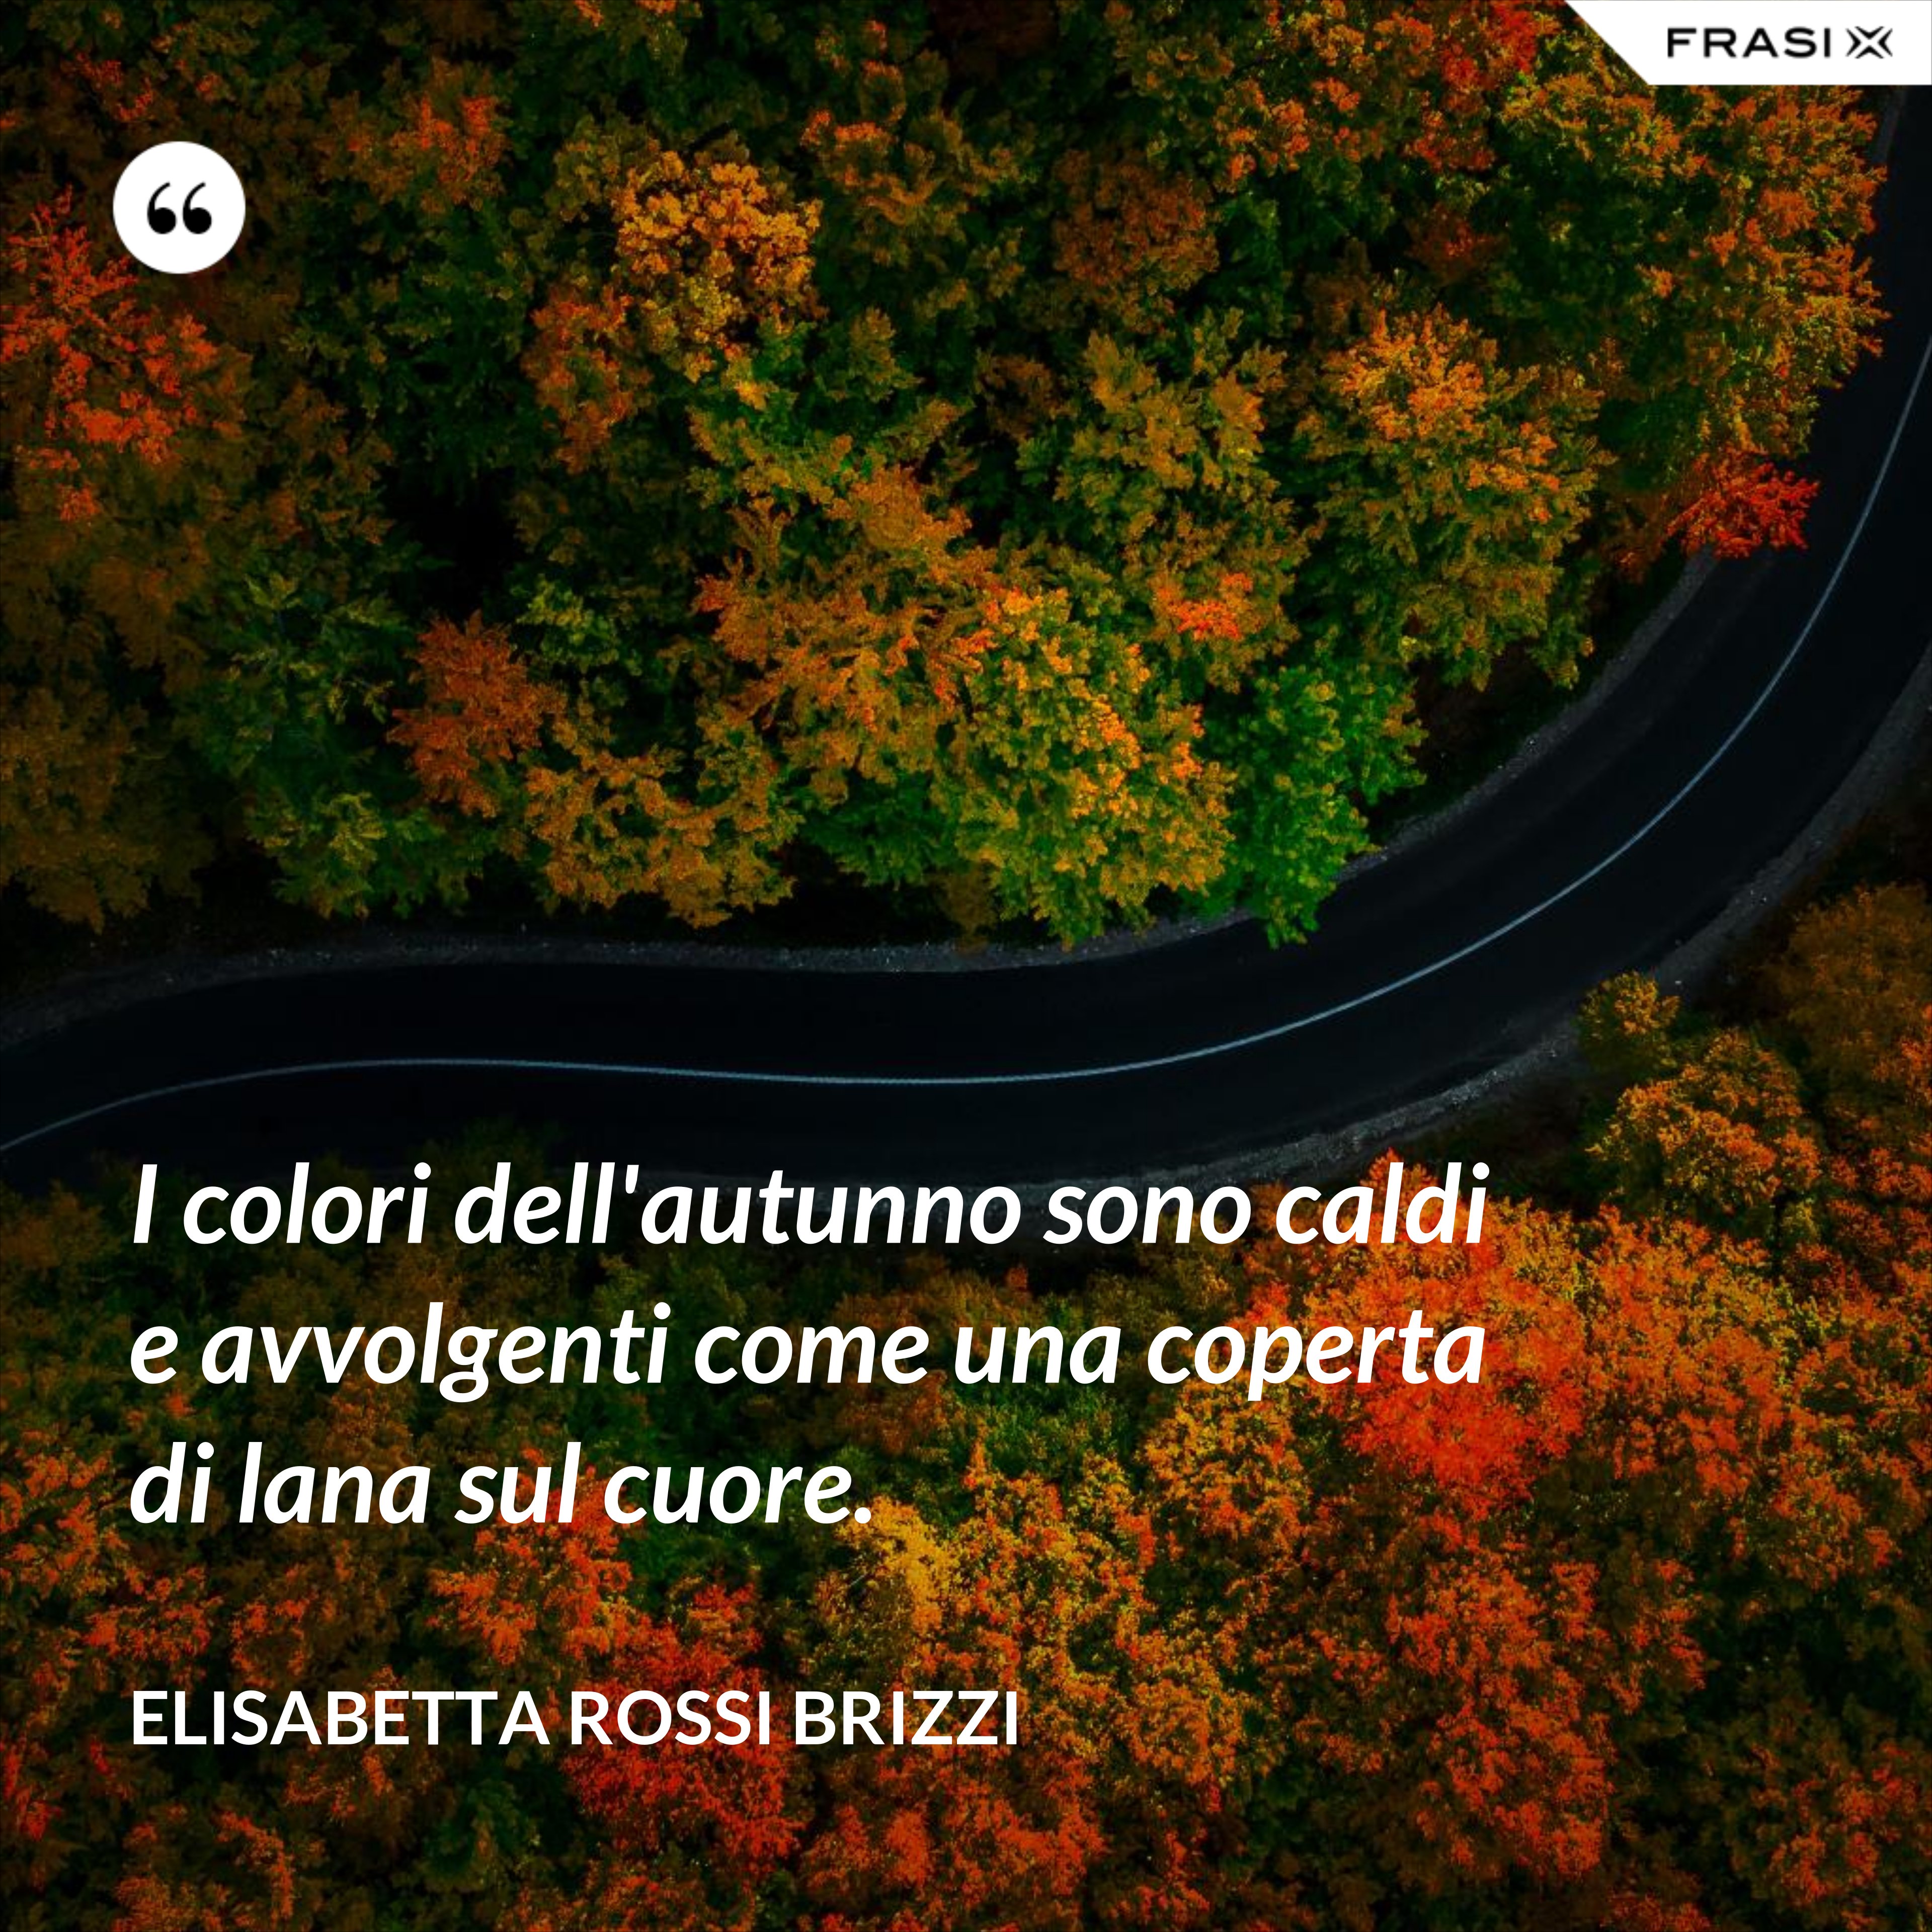 I colori dell'autunno sono caldi e avvolgenti come una coperta di lana sul cuore. - Elisabetta Rossi Brizzi